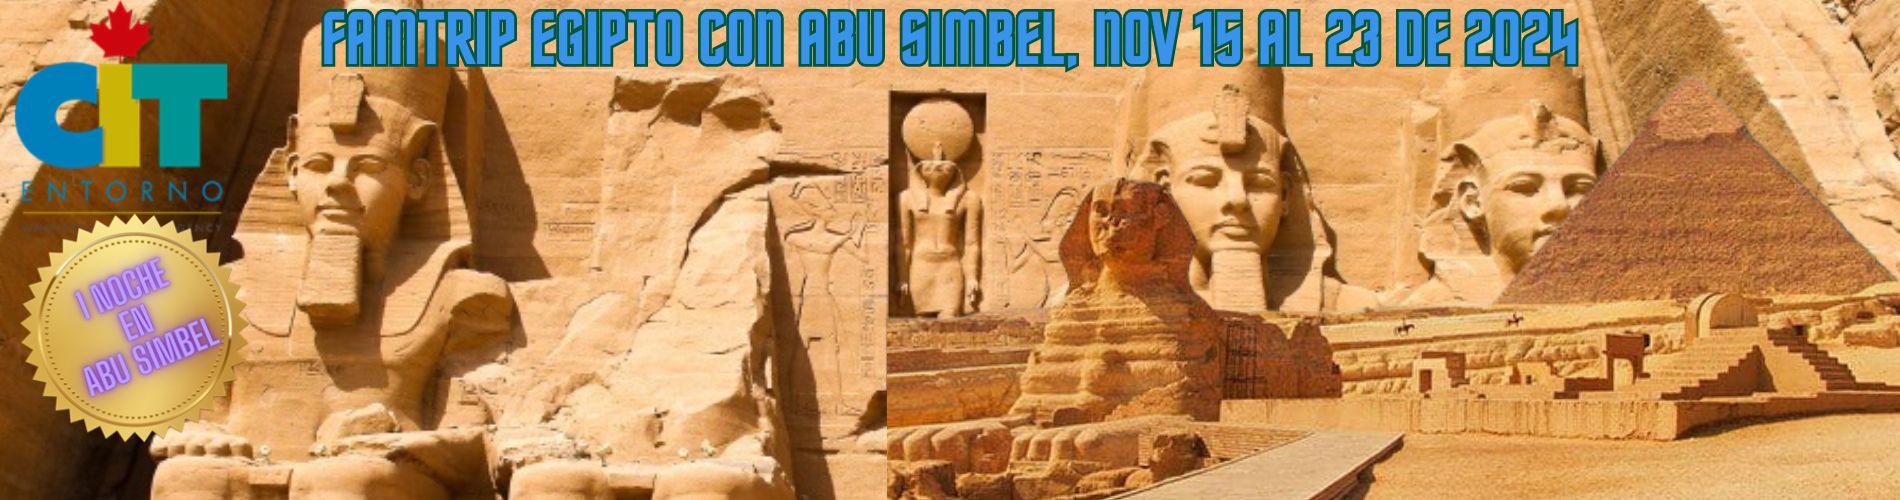 FAMTRIP Egipto con Abu Simbel 9 días 15 al 23 de noviembre de 2024